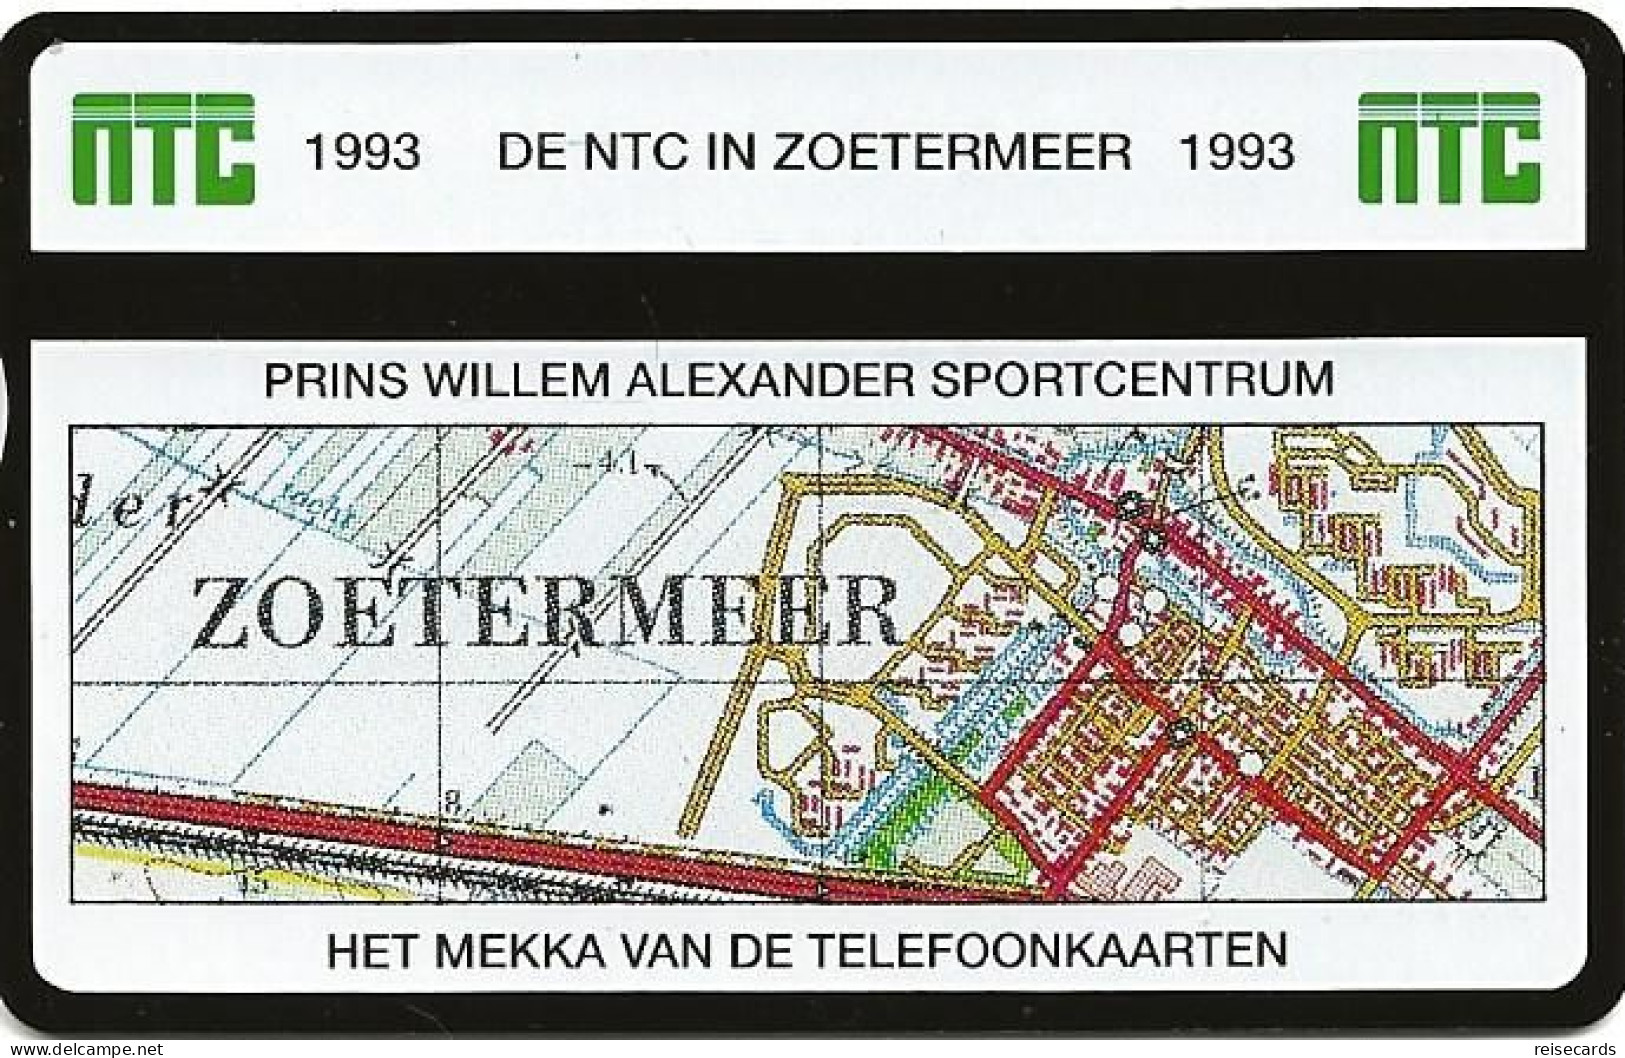 Netherlands: Ptt Telecom - 1993 301K NTC Telefoonkaarten Exhibition Zoetermeer 93. Mint - Privé